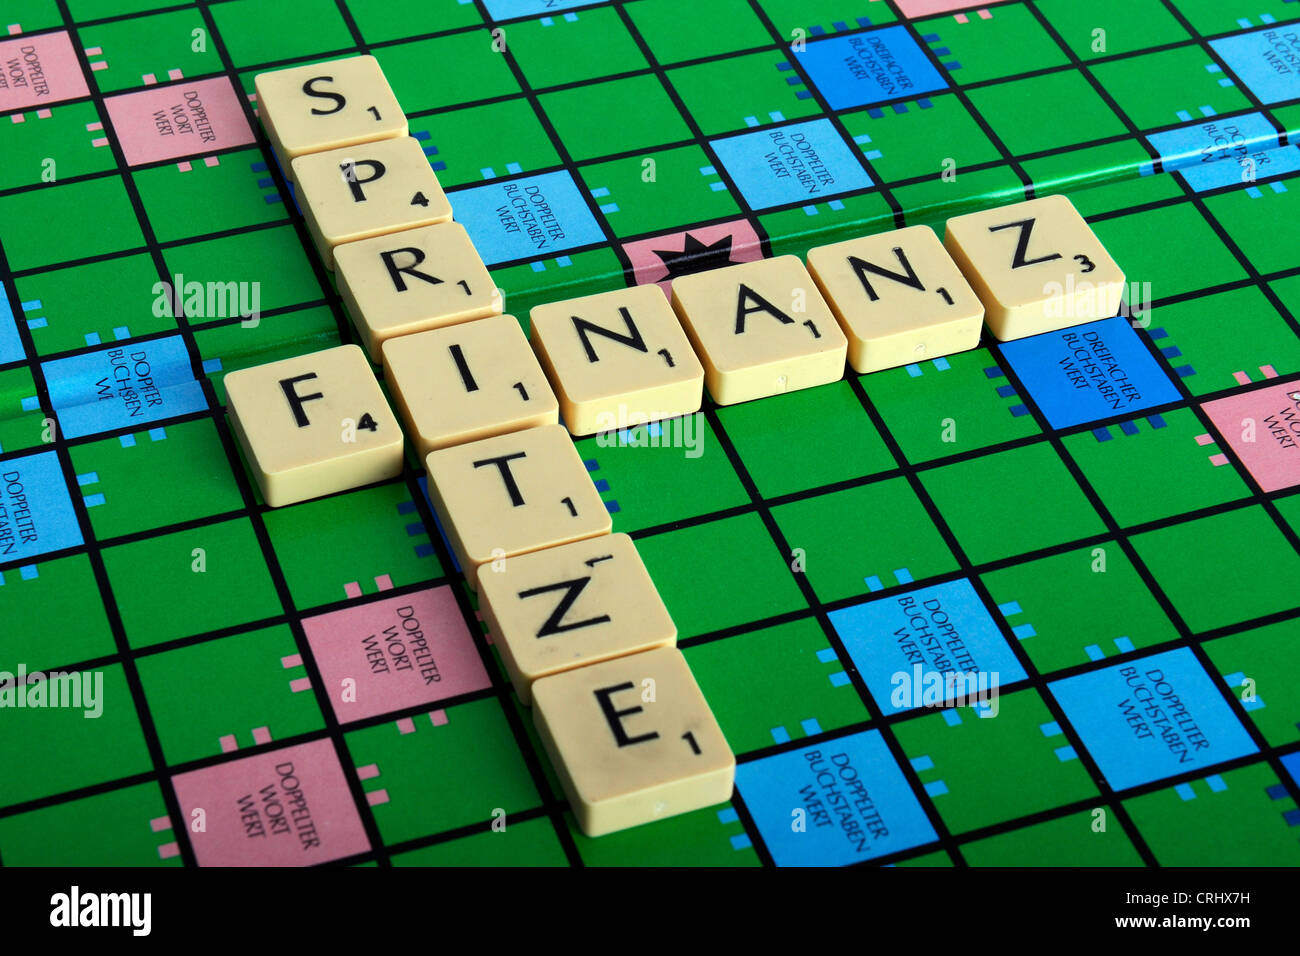 Scrabble con las palabras 'campo' y 'Spritze Finanz', la 'Z' en el último mal formado por una 'N' sentando en el lado Foto de stock